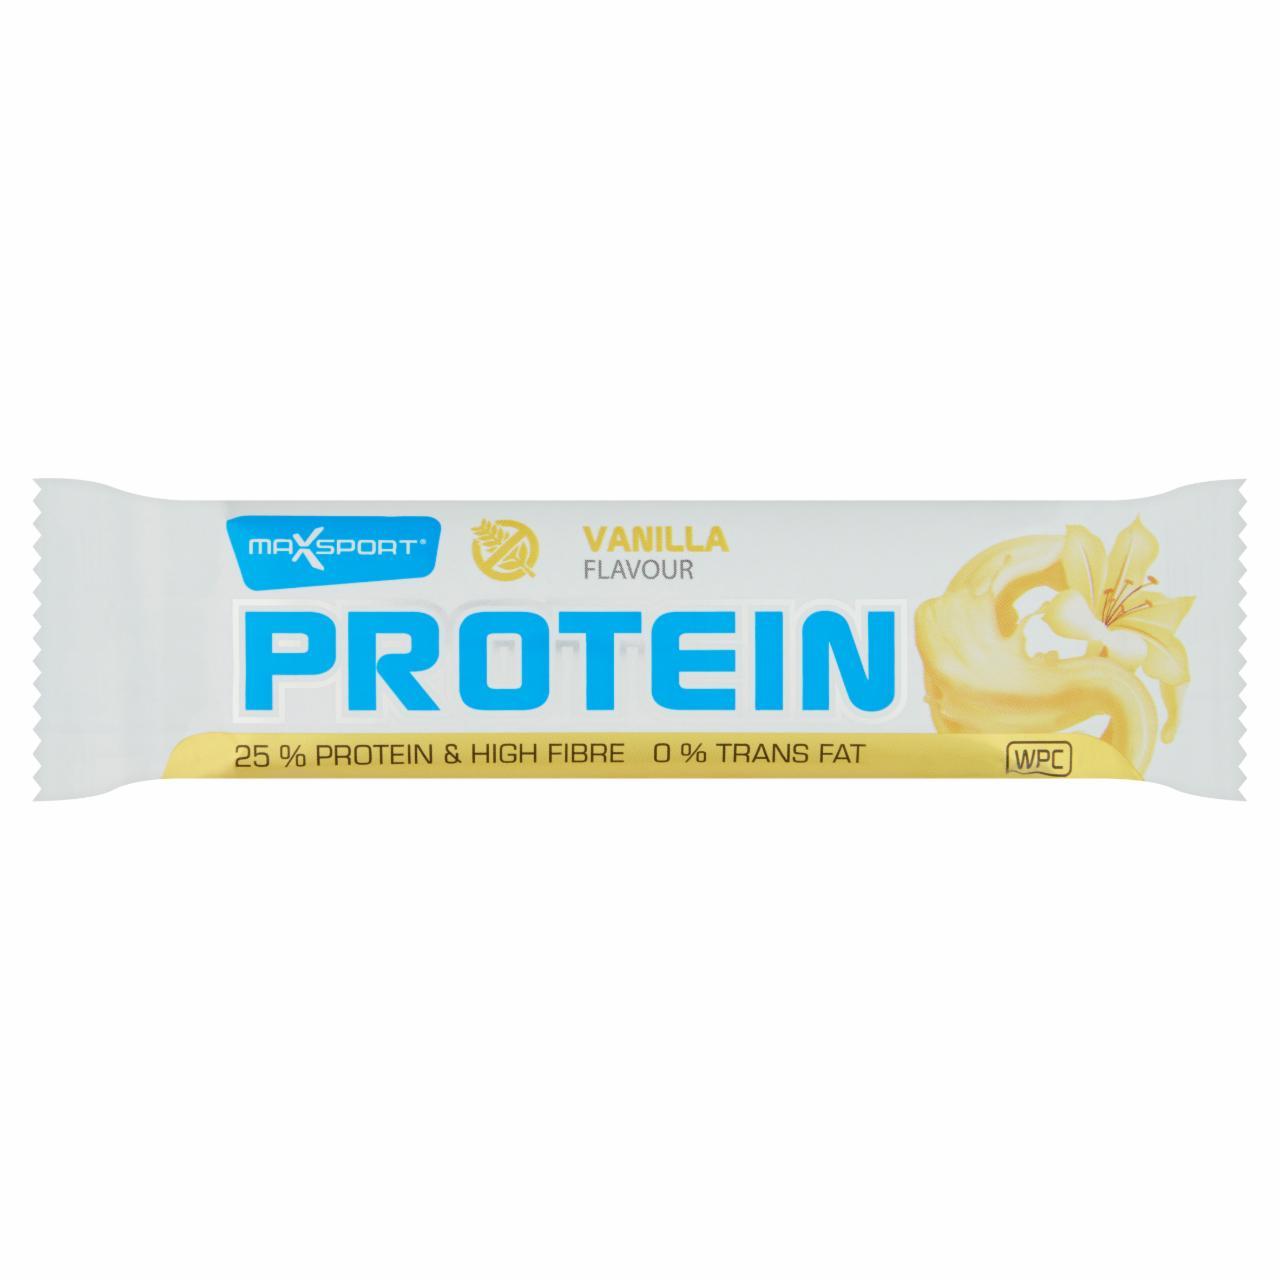 Képek - Protein gluténmentes, vanília ízű fehérje tartalmú szelet fehér bevonattal MaxSport